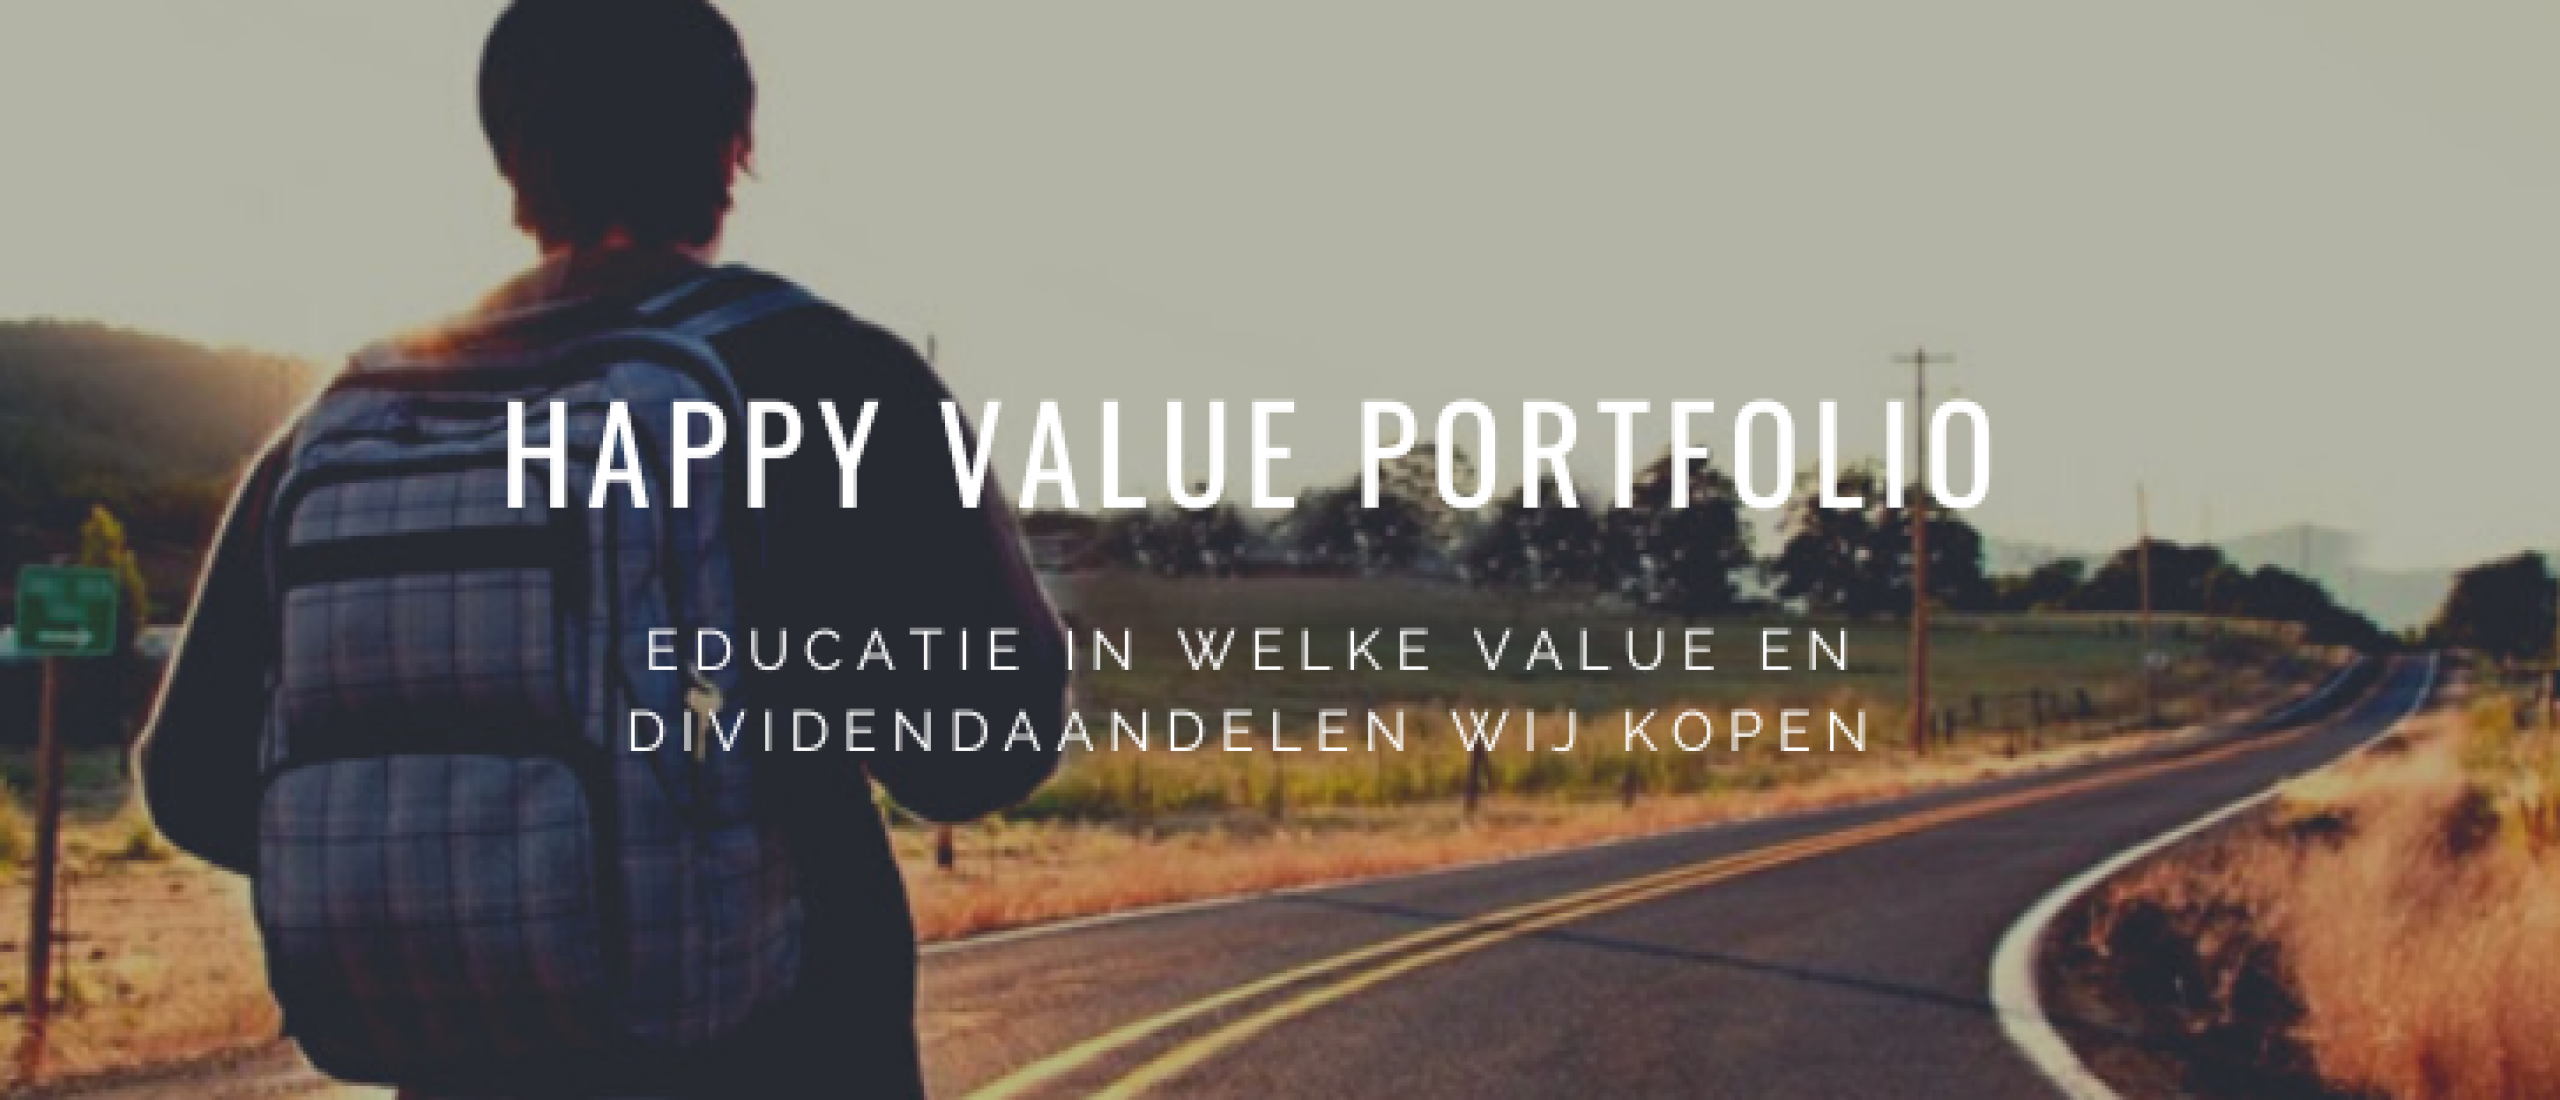 happy-value-portfolio